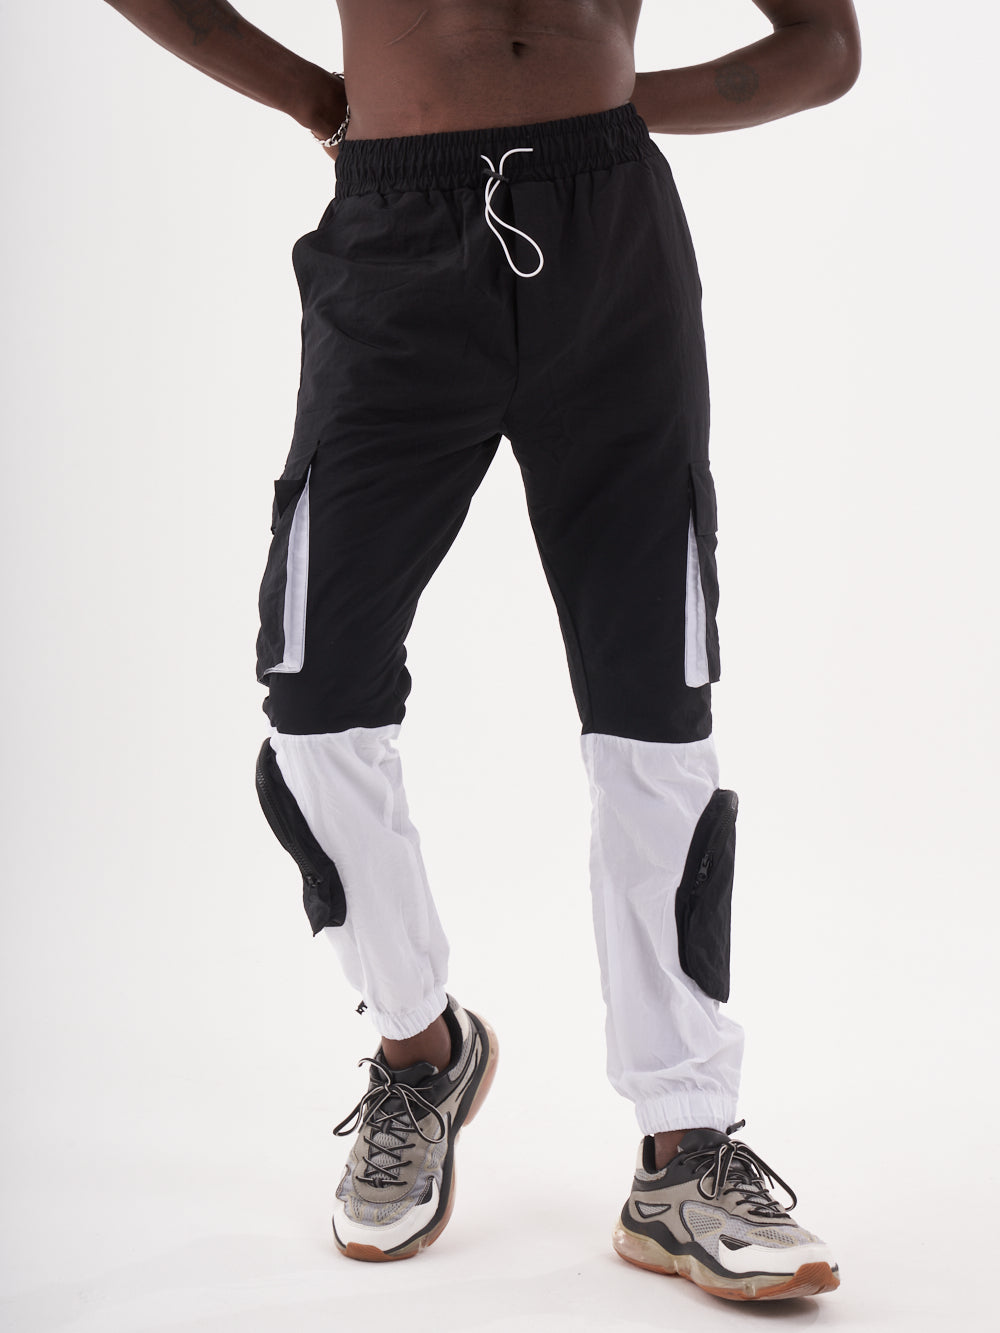 A man wearing the RENEGADE | BLACK cargo pants.